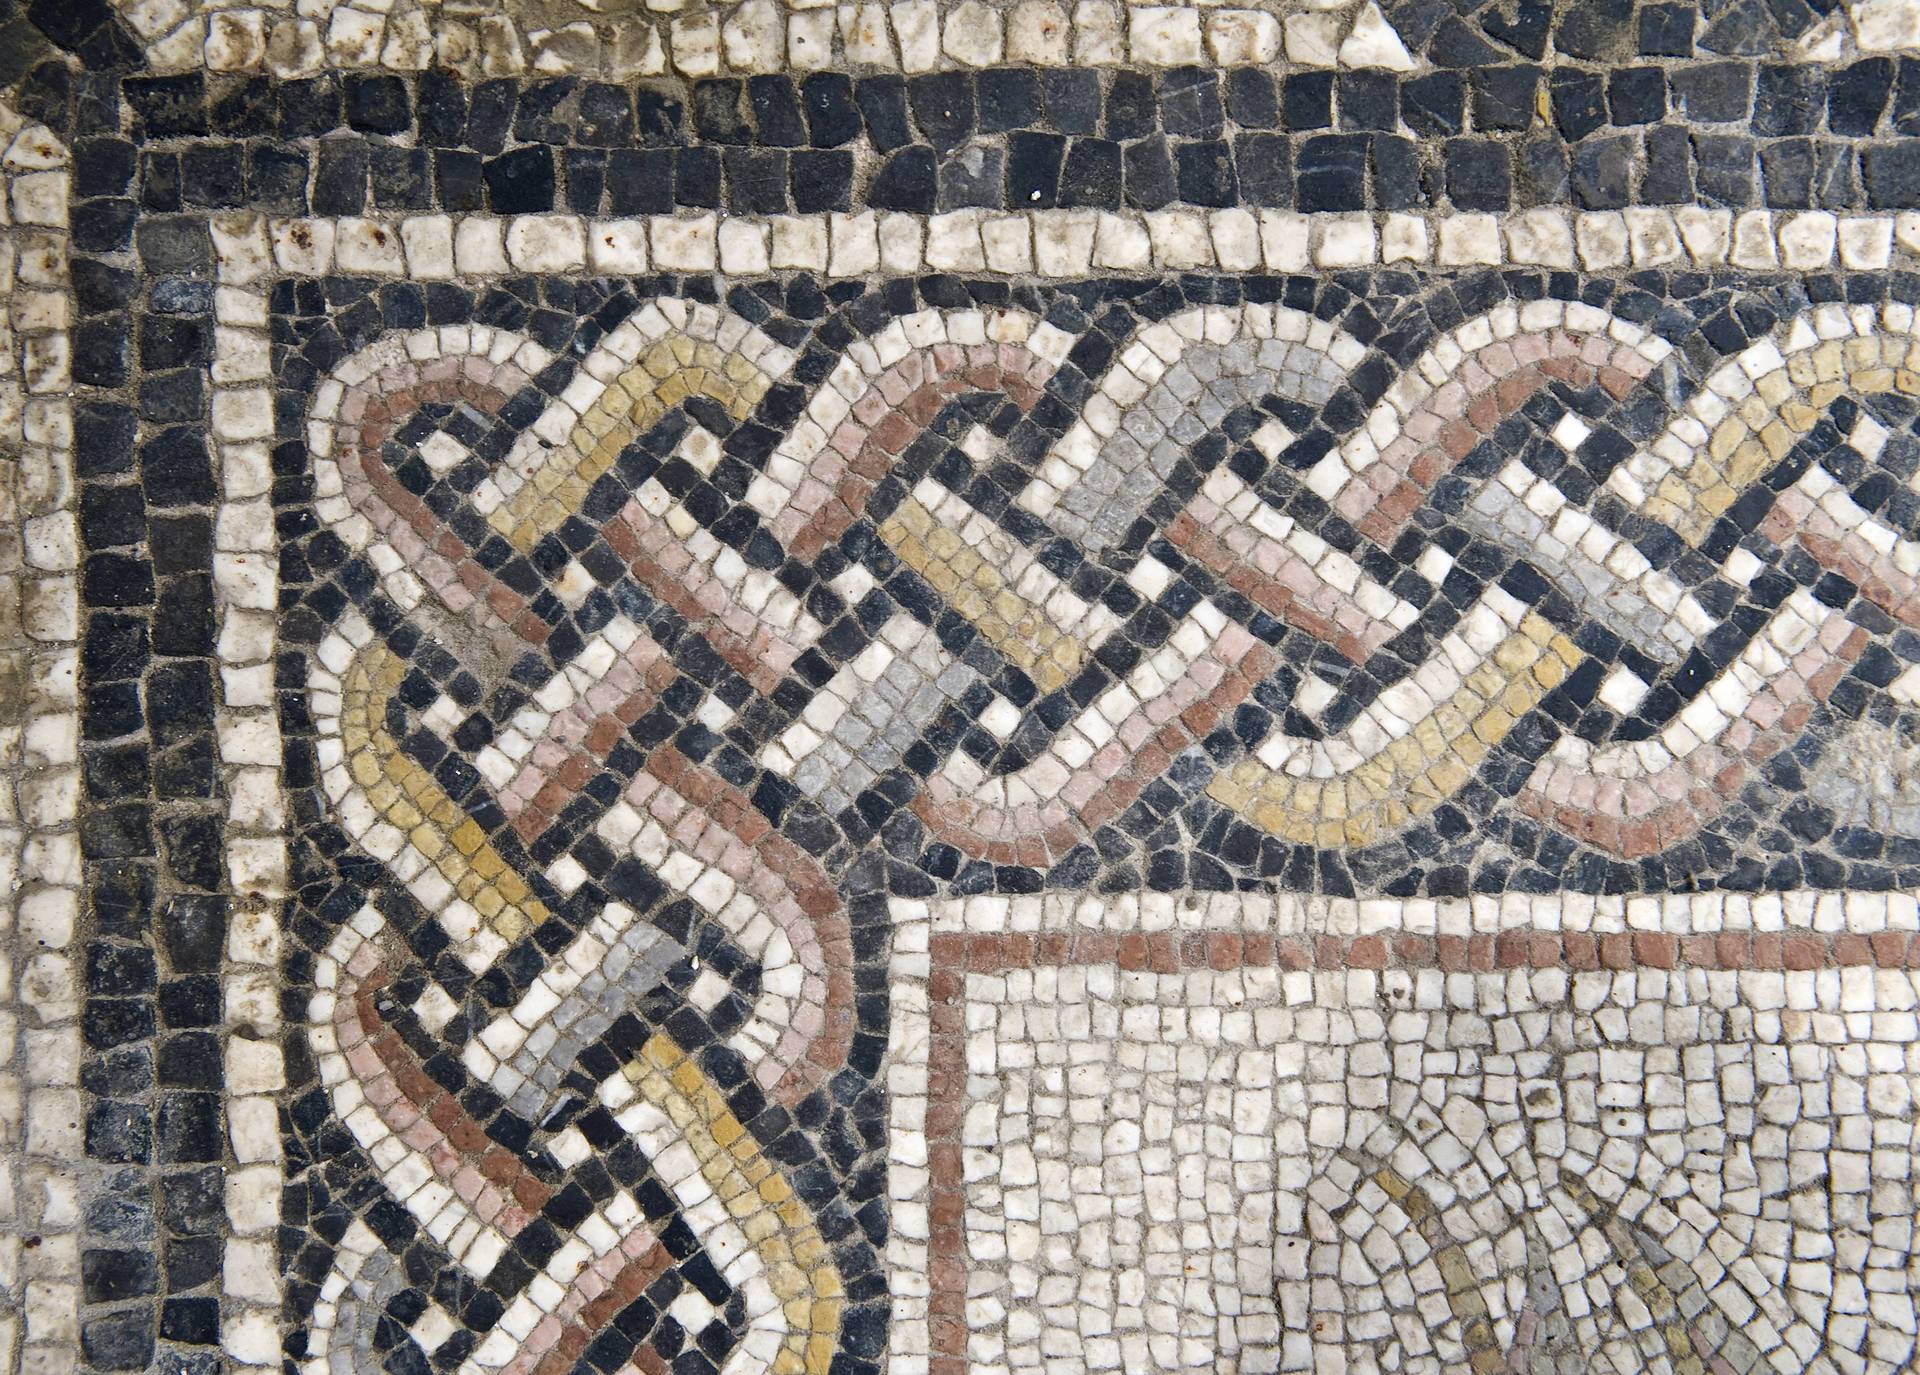 Mosaikausschnitte aus dem Domgrabungsmuseum